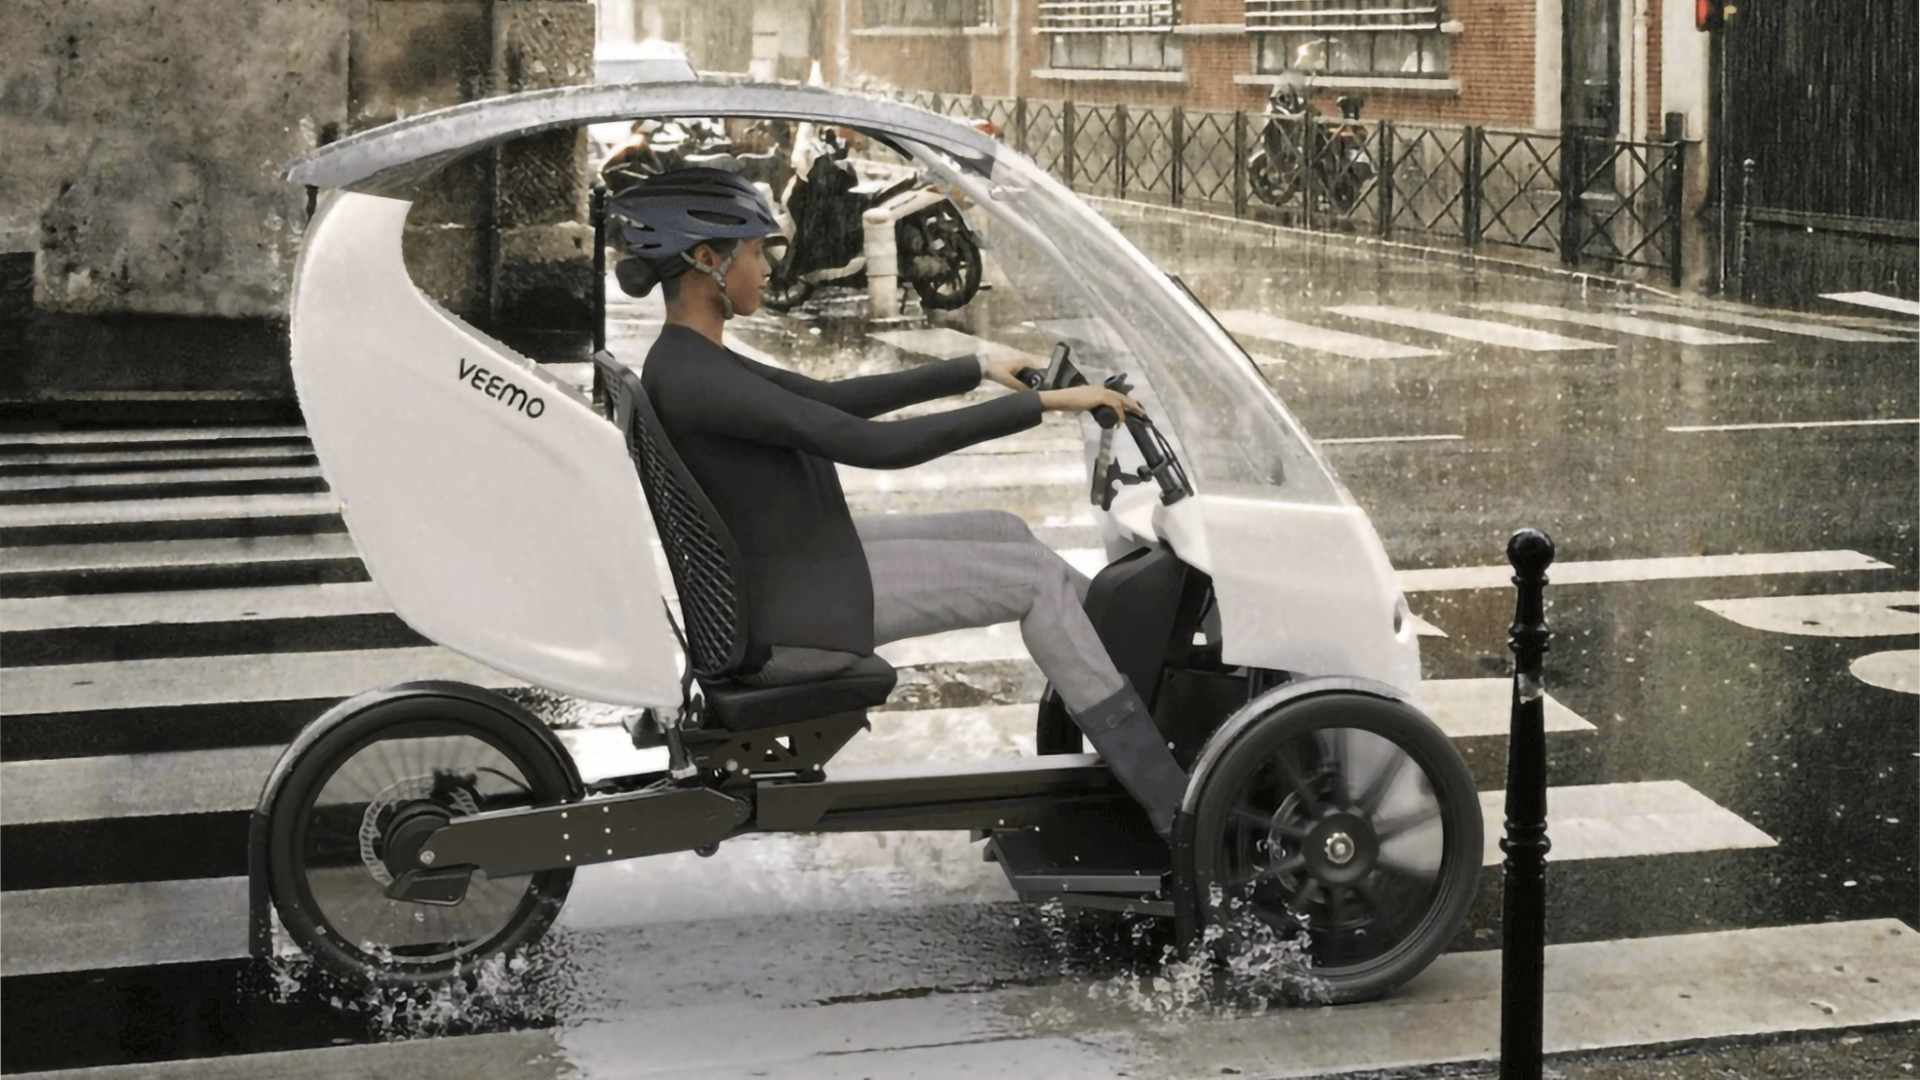 Envodrive cria triciclo elétrico peculiar com cabine de materiais reciclados e autonomia de até 66 km